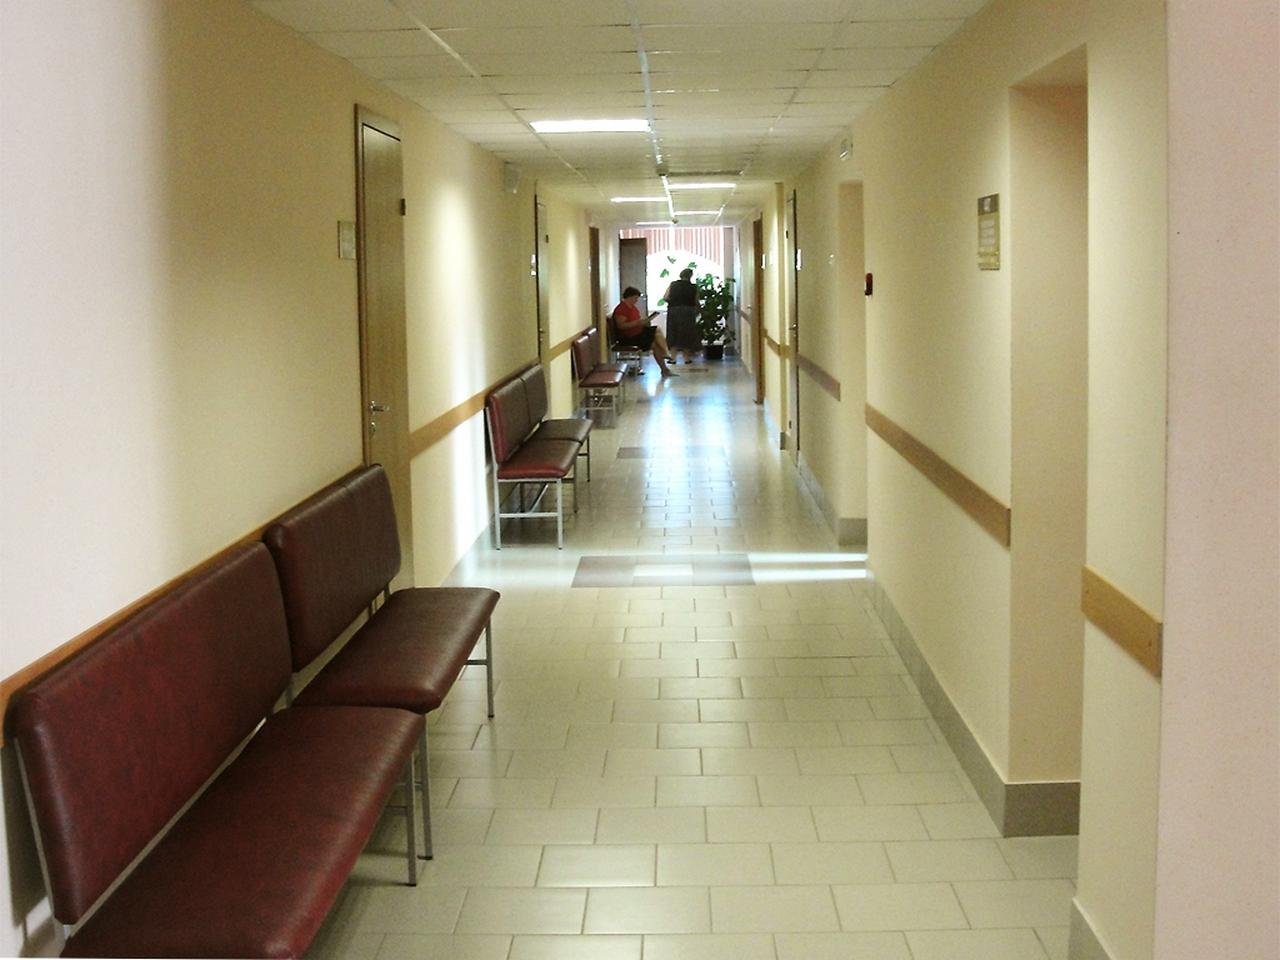 Помещение больницы